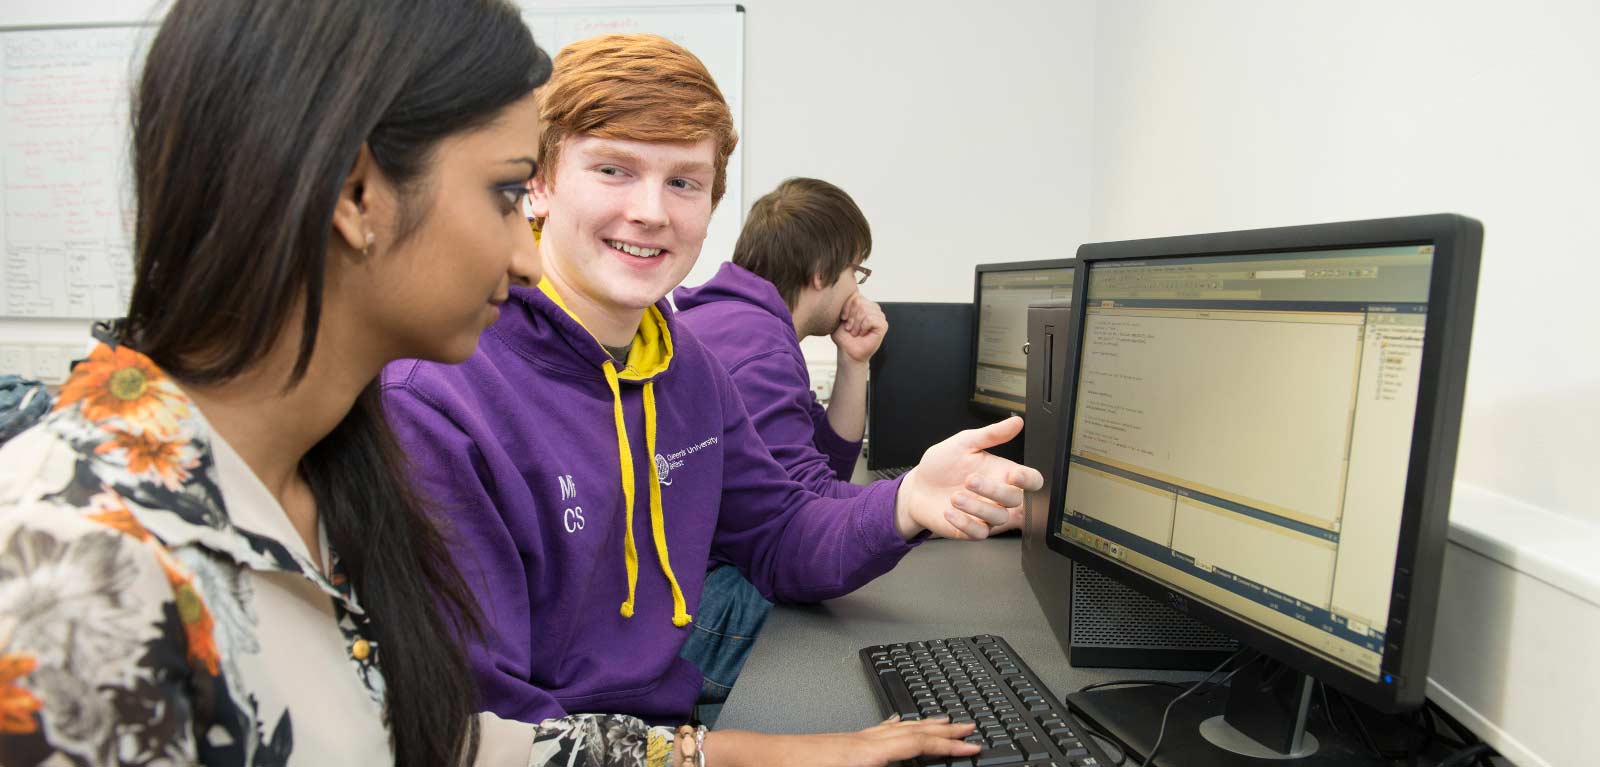 School student ambassador assisting a computer user